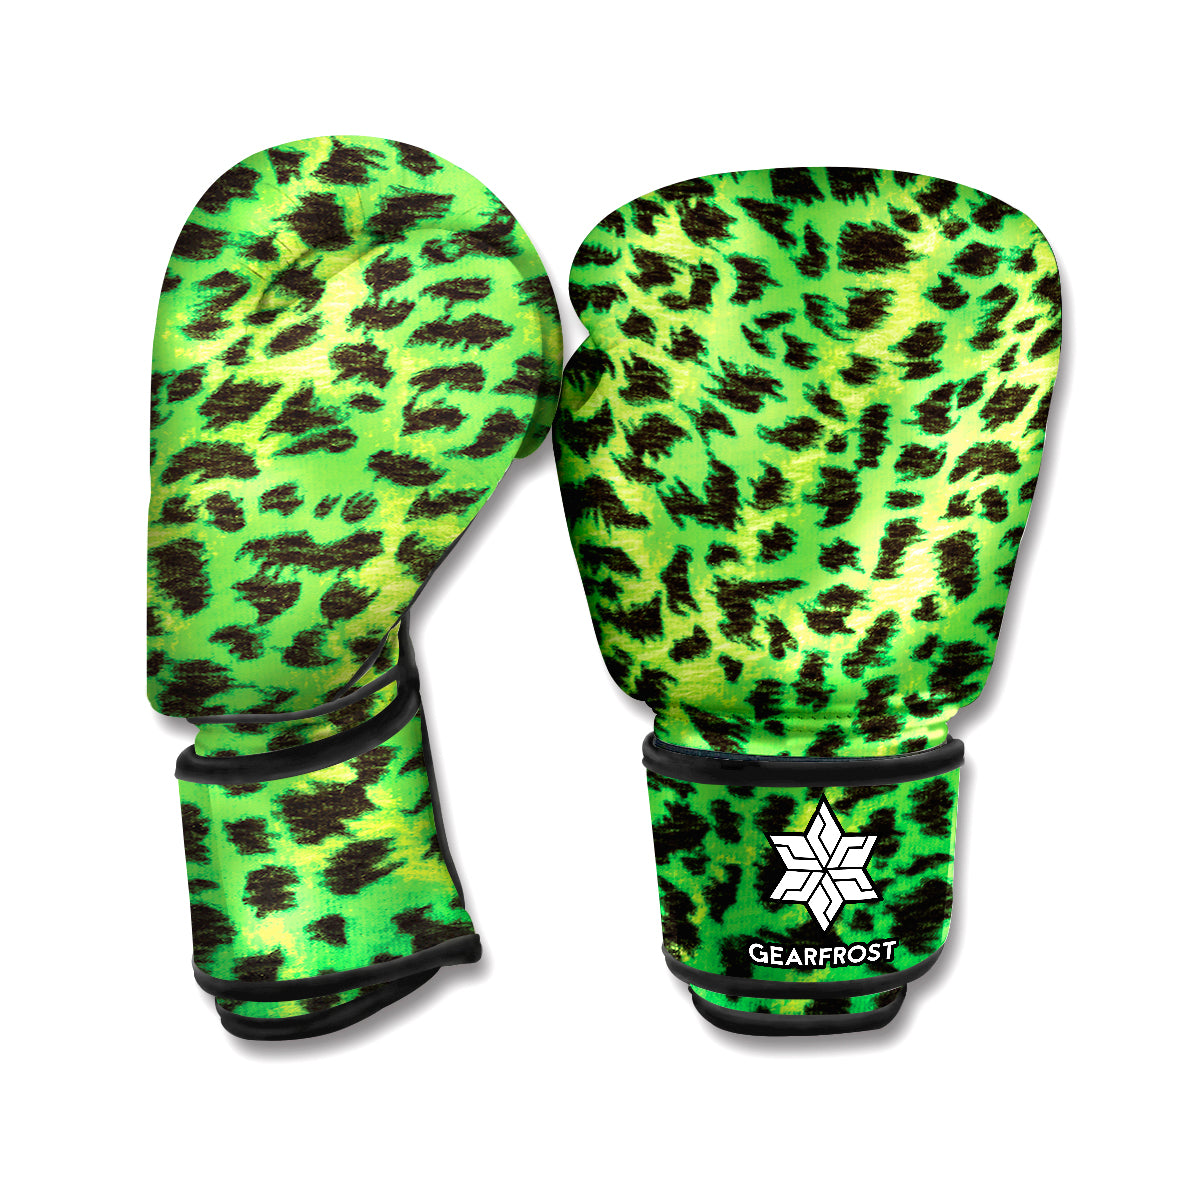 Green And Black Cheetah Print Boxing Gloves